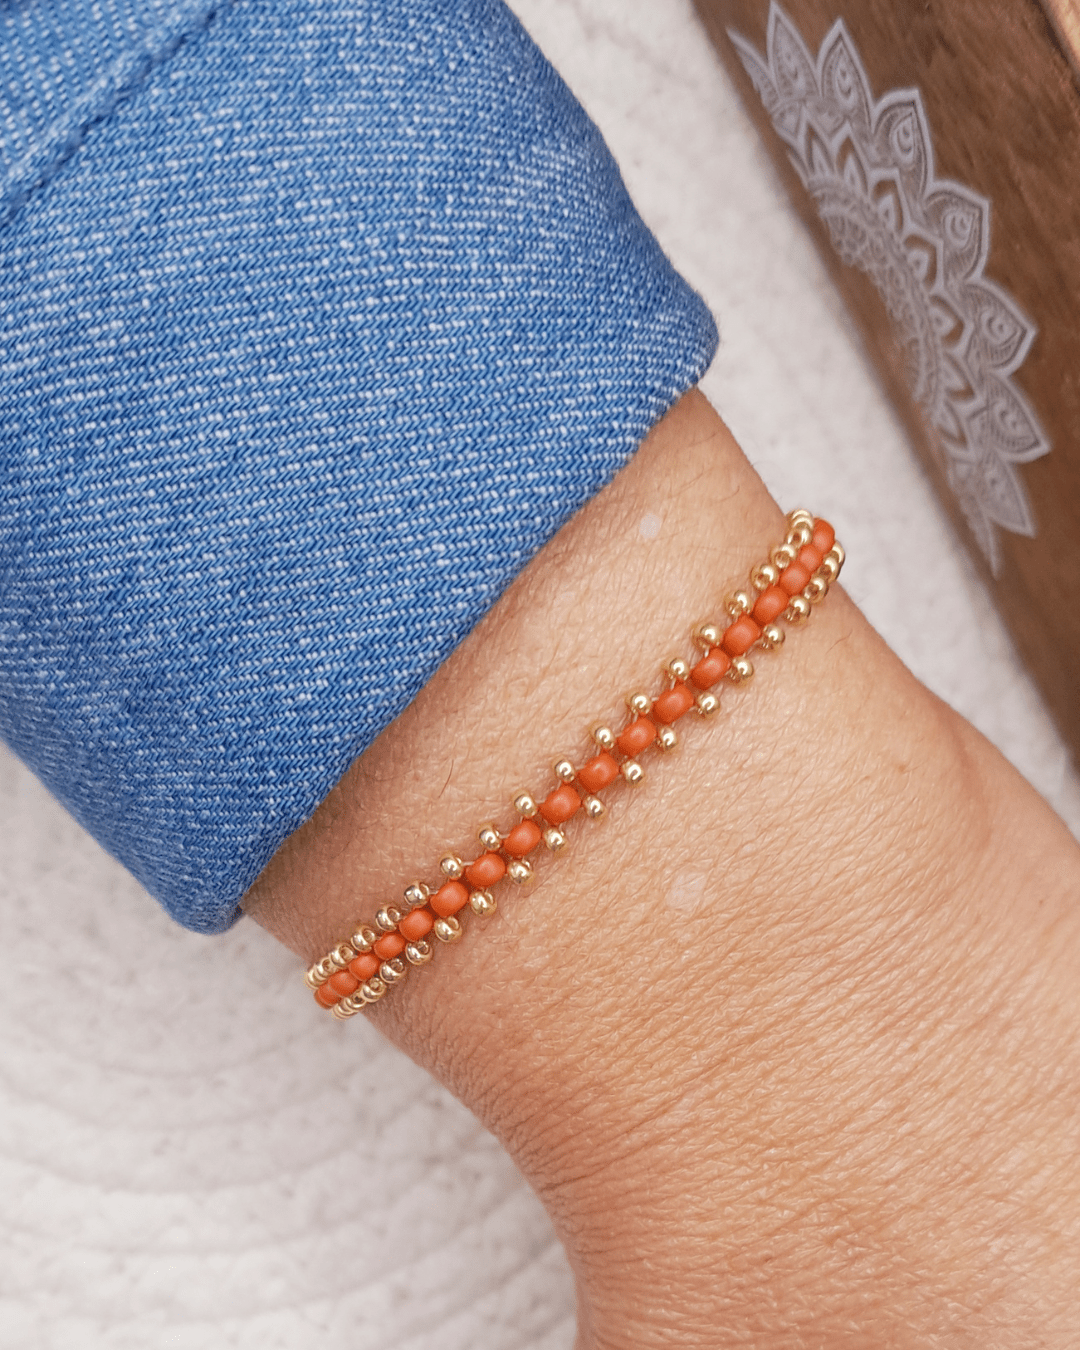 Explorez l'énergie vibrante du bracelet Kaya par Oyartza Hontza. Des perles Miyuki tissées à la main créent un motif coloré unique, accompagné d'une délicate rangée de perles dorées. Un bijou énergétique pour votre quotidien.